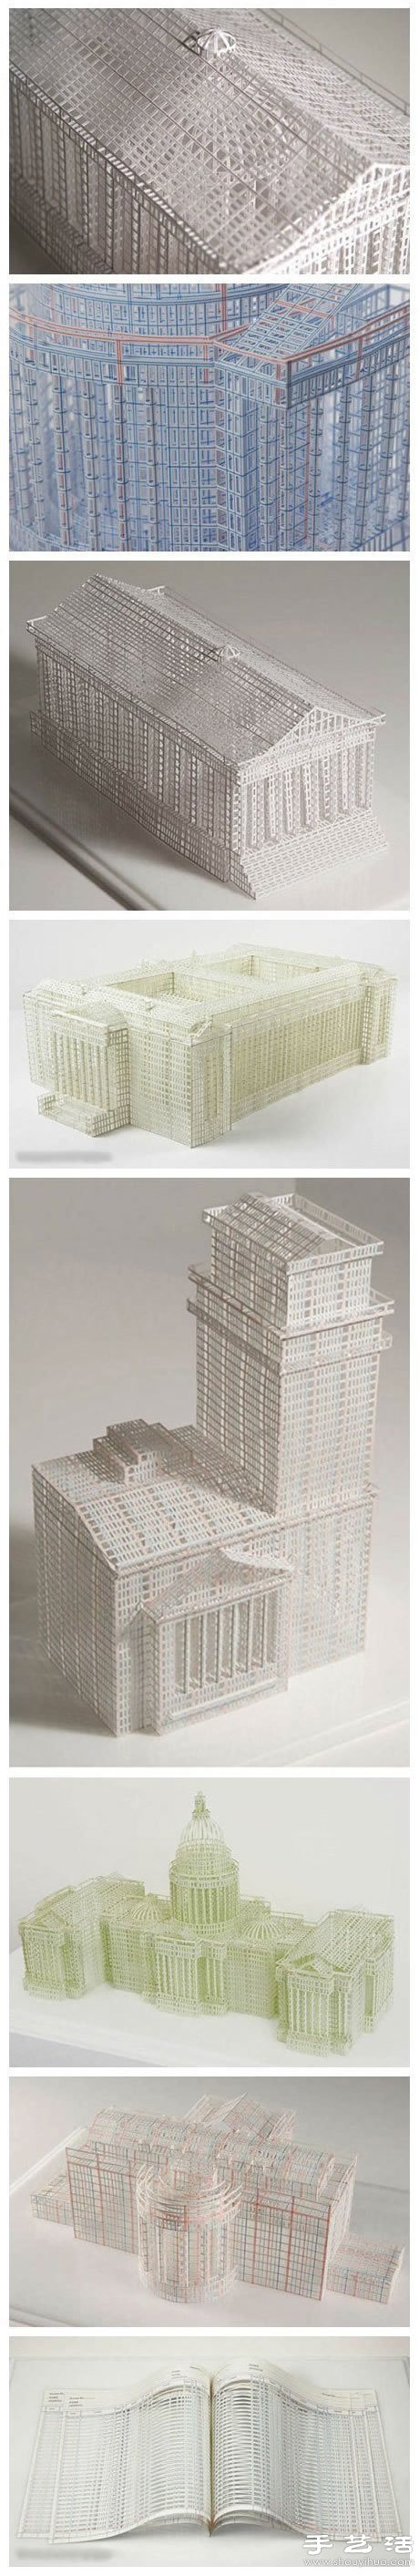 账簿纸DIY宏伟壮观的建筑物模型